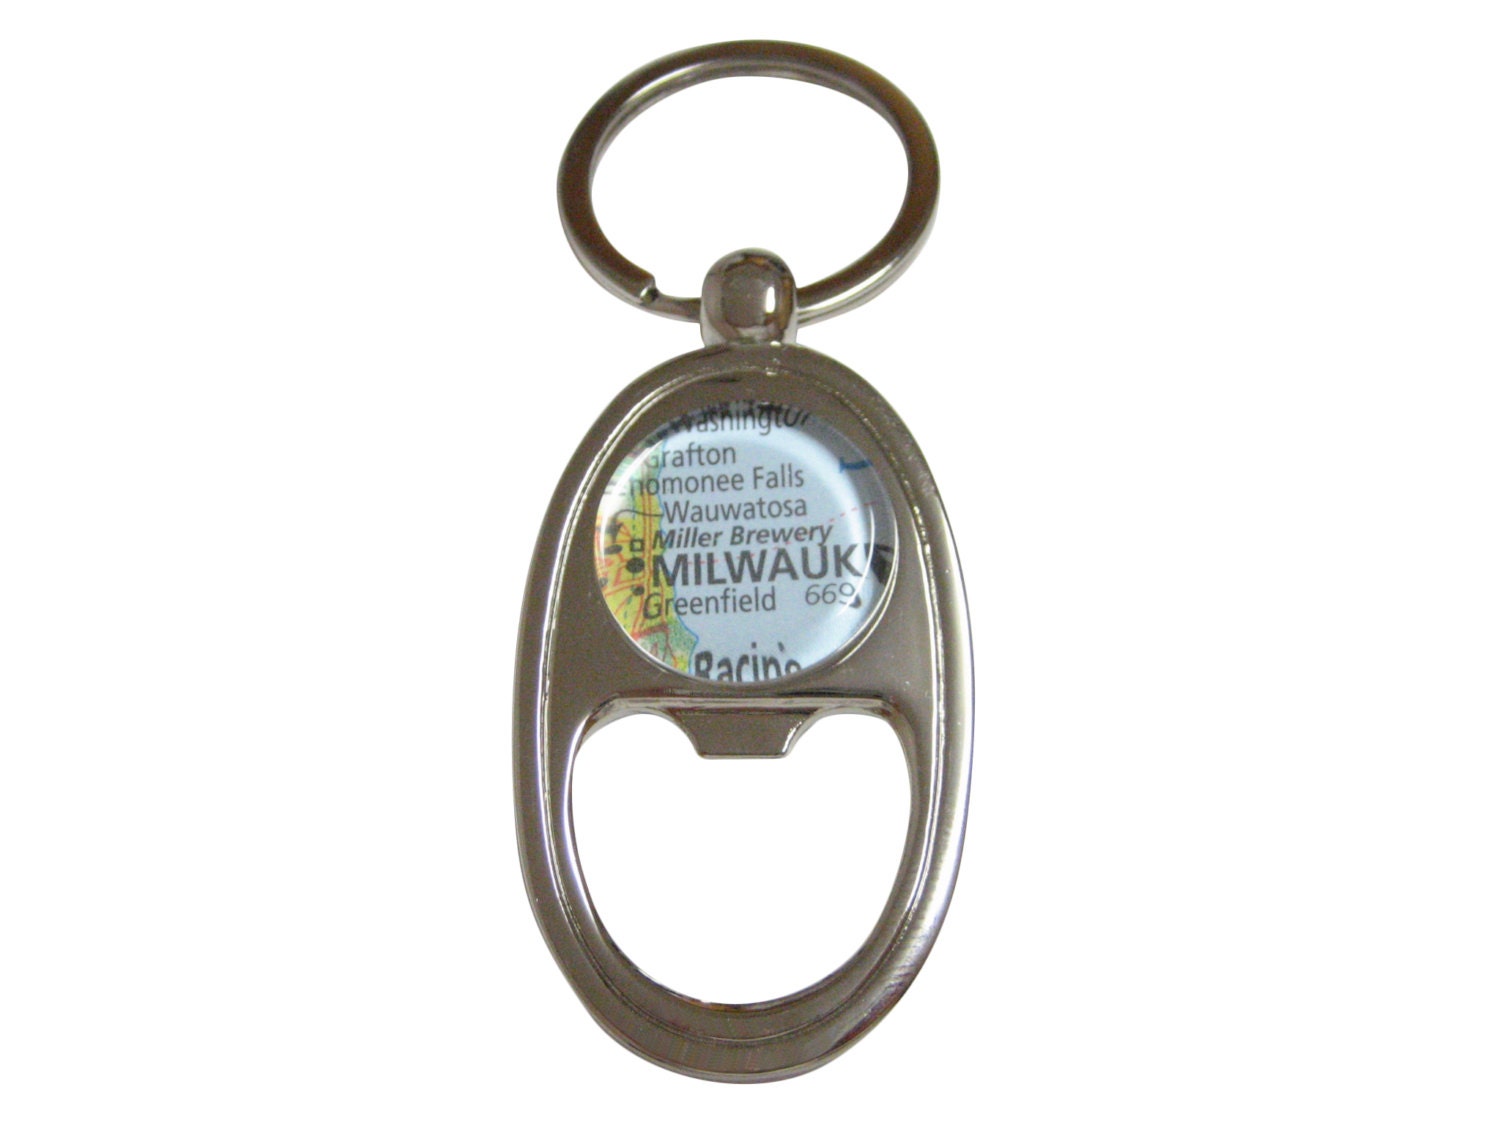 Focus on Souvenirs (5002988) Miller Lite Hotdog Keychain